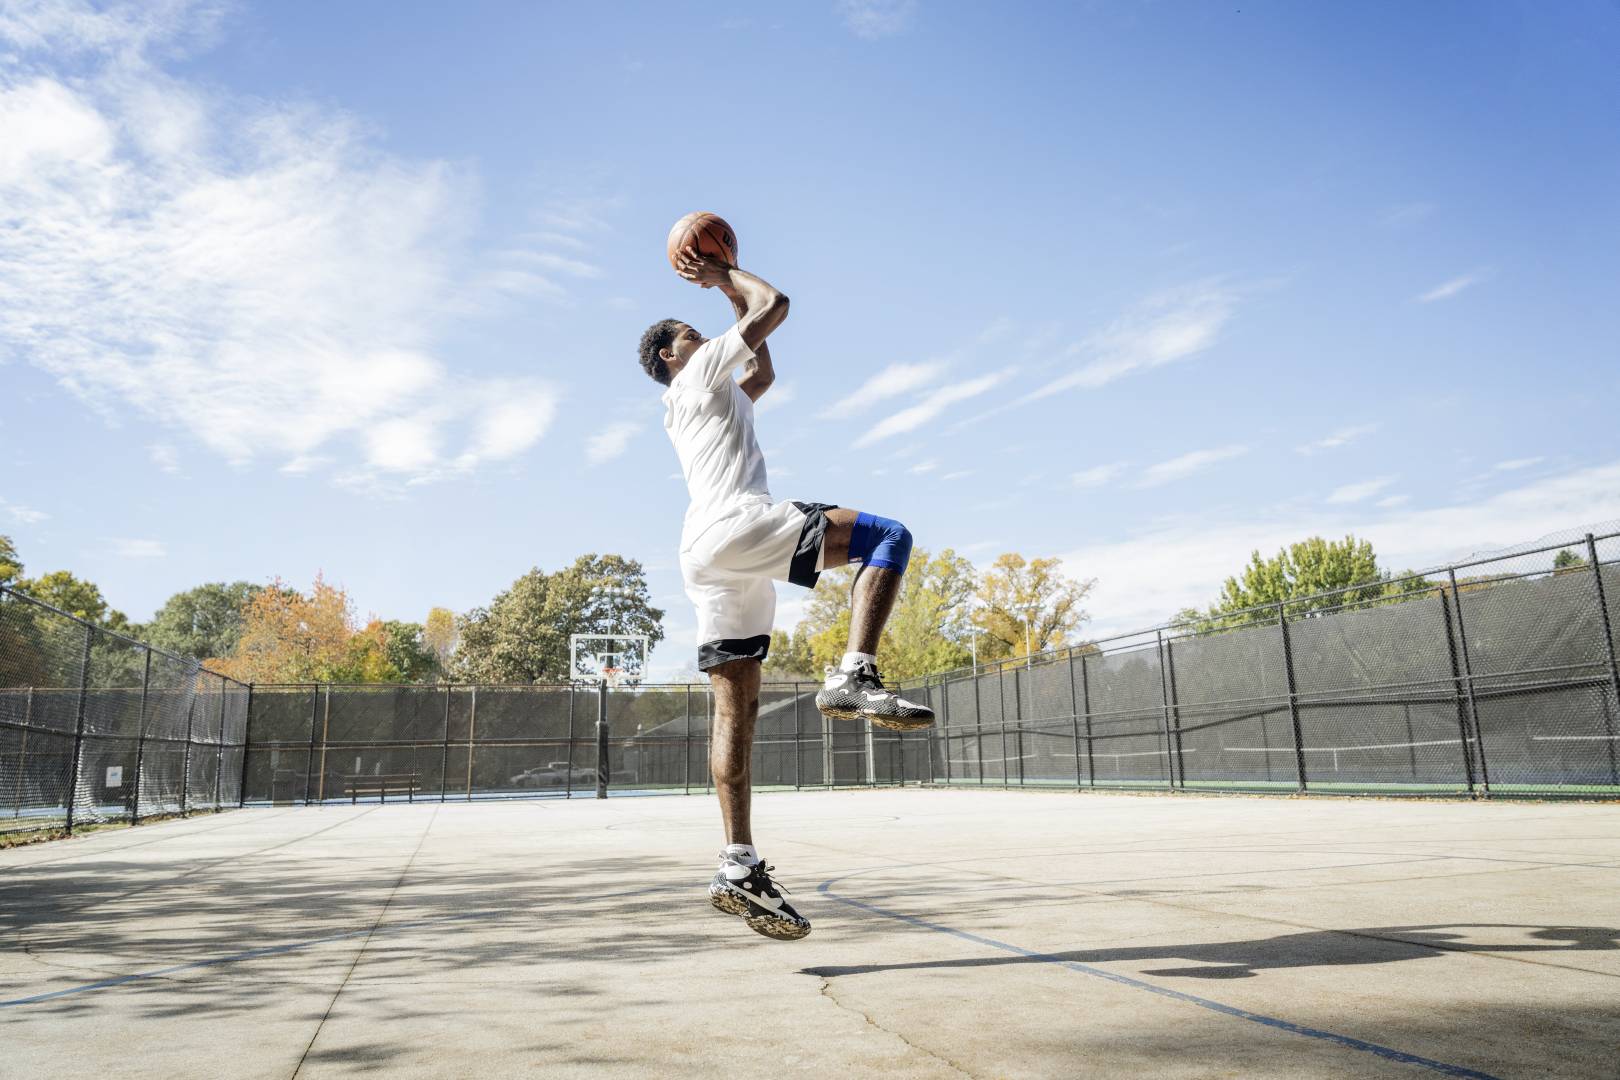 Basketbalspelers springen op een straatveld voor de worp uit handen met de bal over het hoofd, gebogen in de andere, laten de andere verticaal naar beneden zien